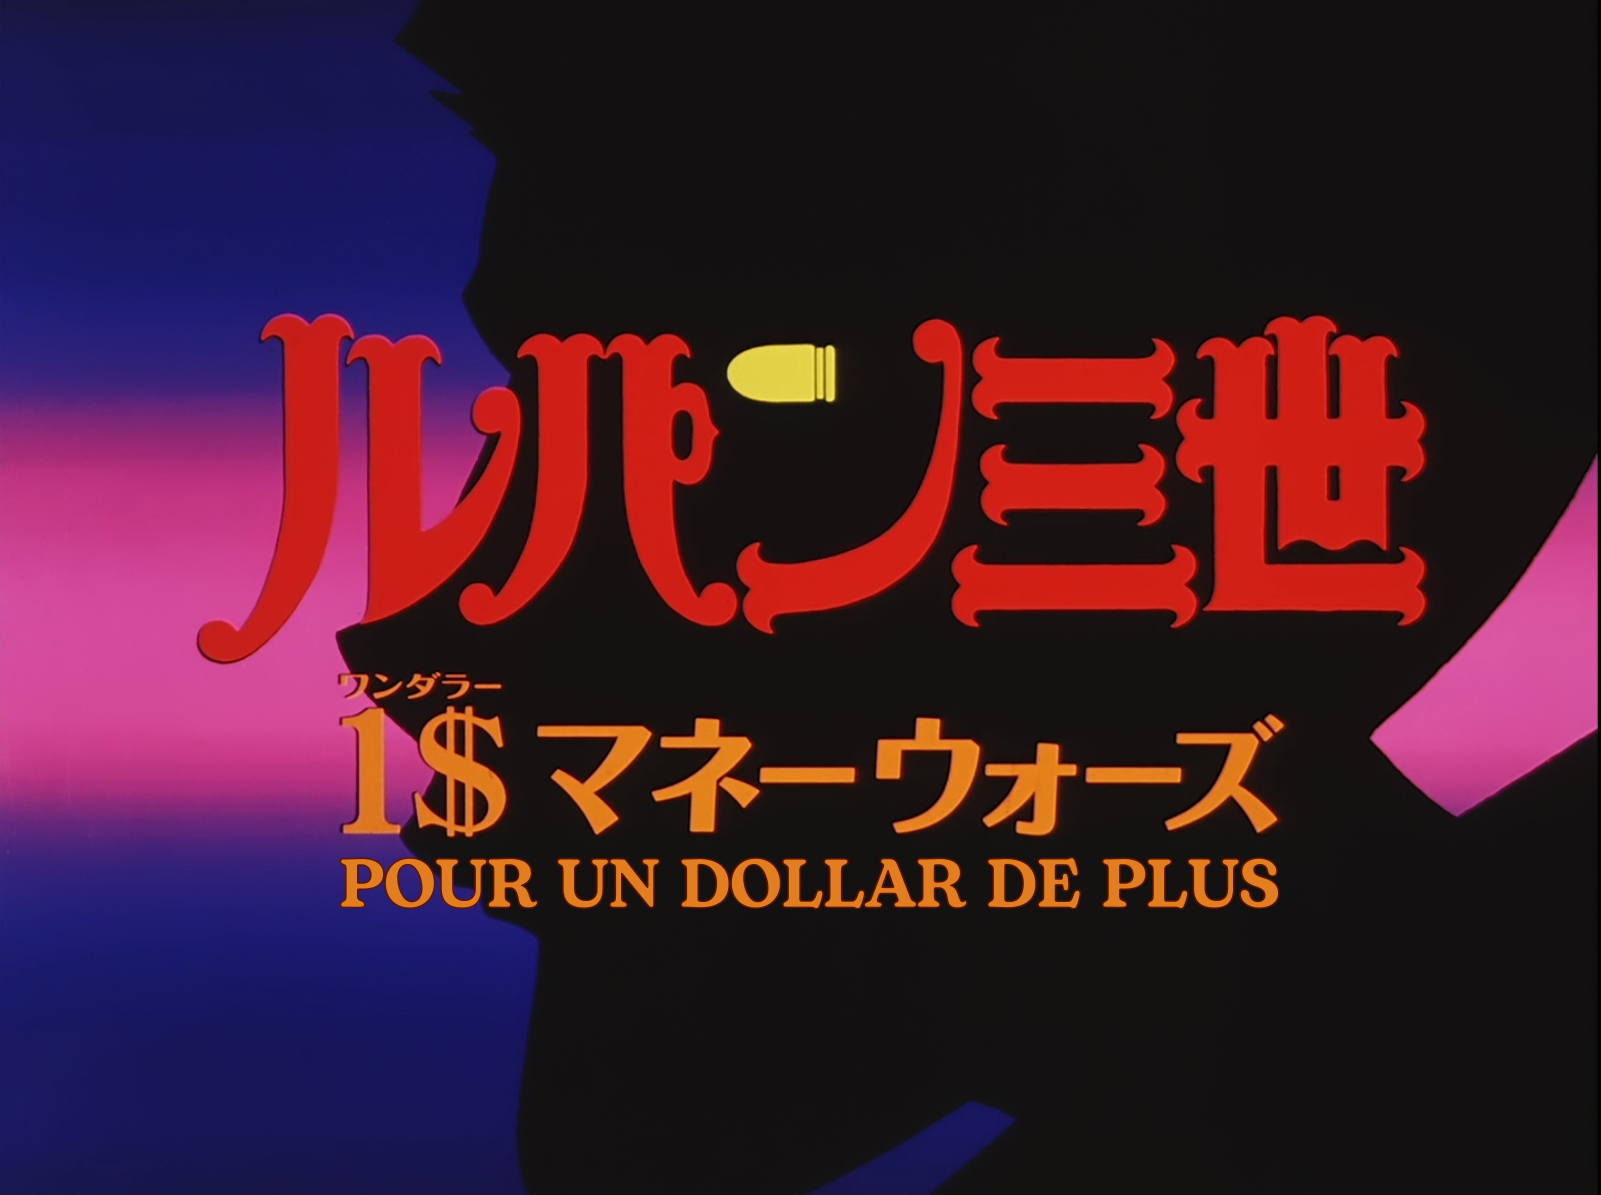 Lupin III TV-Special 12 (2000) Pour un dollar de plus - $1 Money Wars VOSTFR